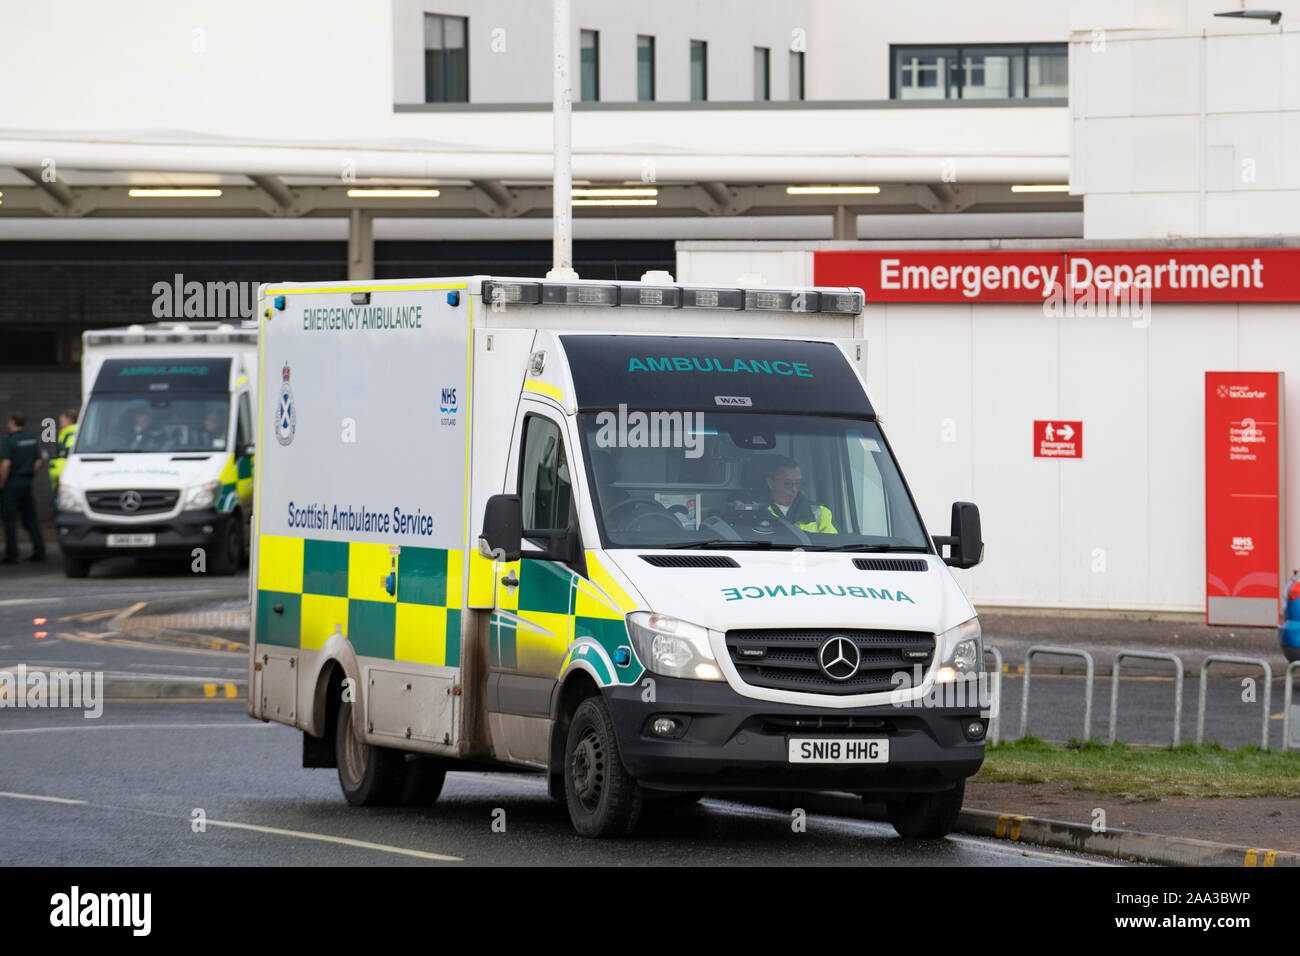 Vue extérieure de l'accident et service d'urgence de l'Edinburgh Royal Infirmary , Ecosse, Royaume-Uni Banque D'Images